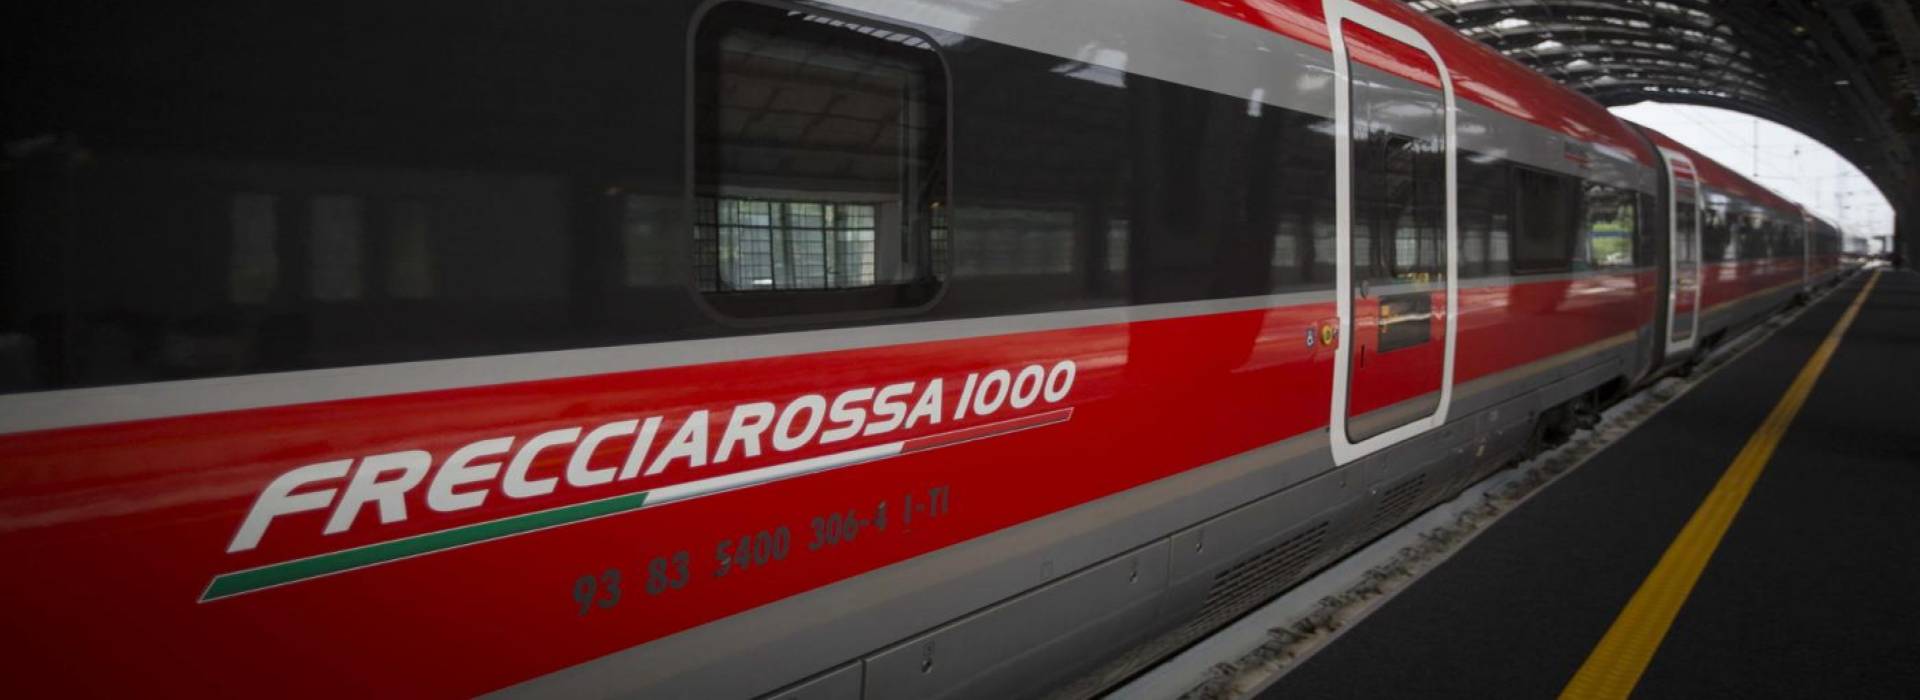 Pescara-Roma: la nuova tratta ferroviaria che mette tutti (o quasi) in disaccordo